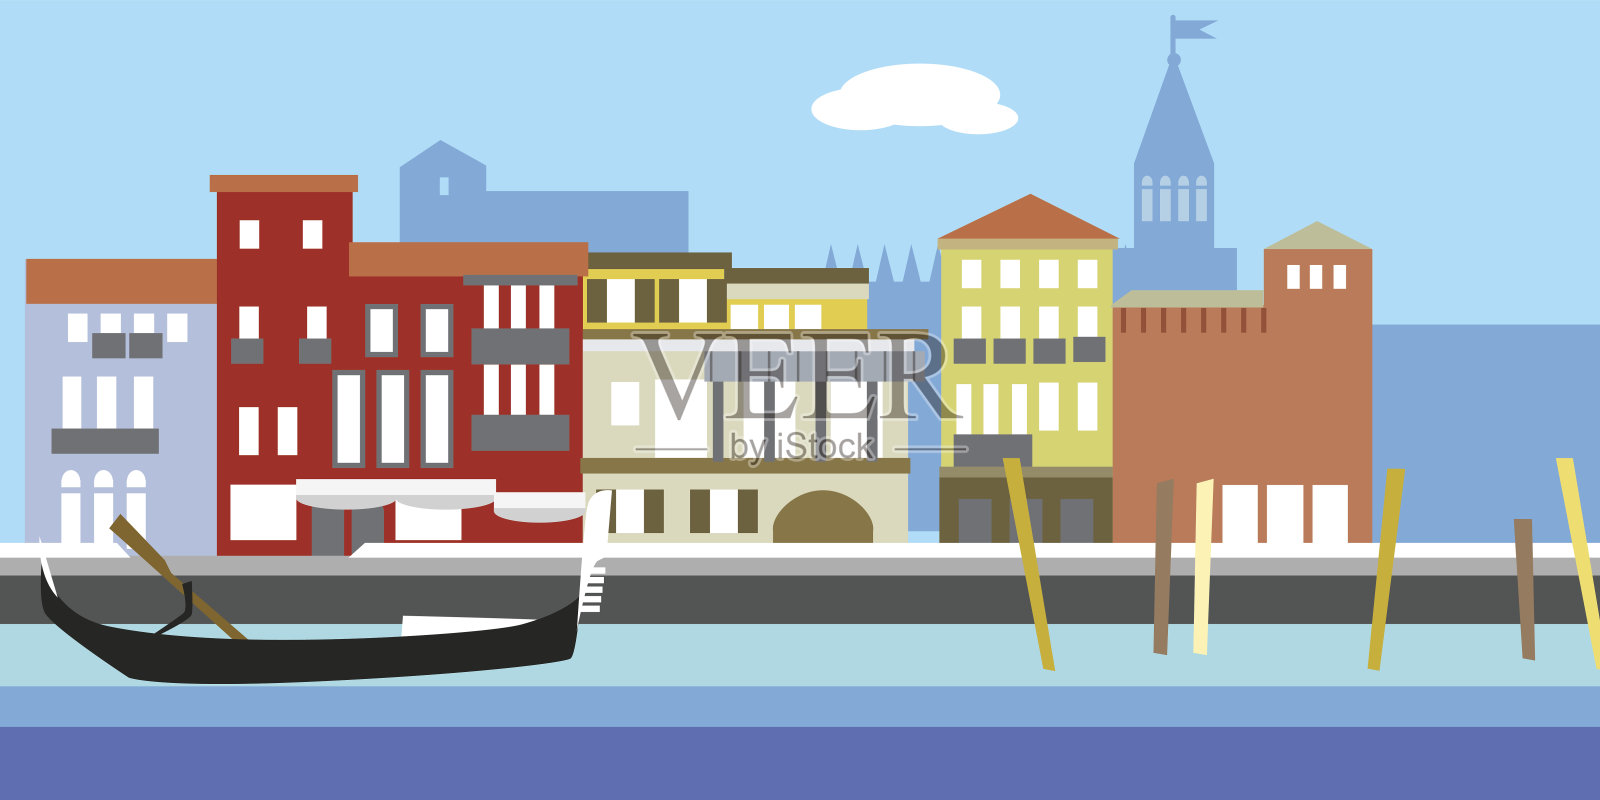 简单风格的欧洲城市景观矢量图。传统的景观。老式欧洲风格的房子。河道及船只。插画图片素材